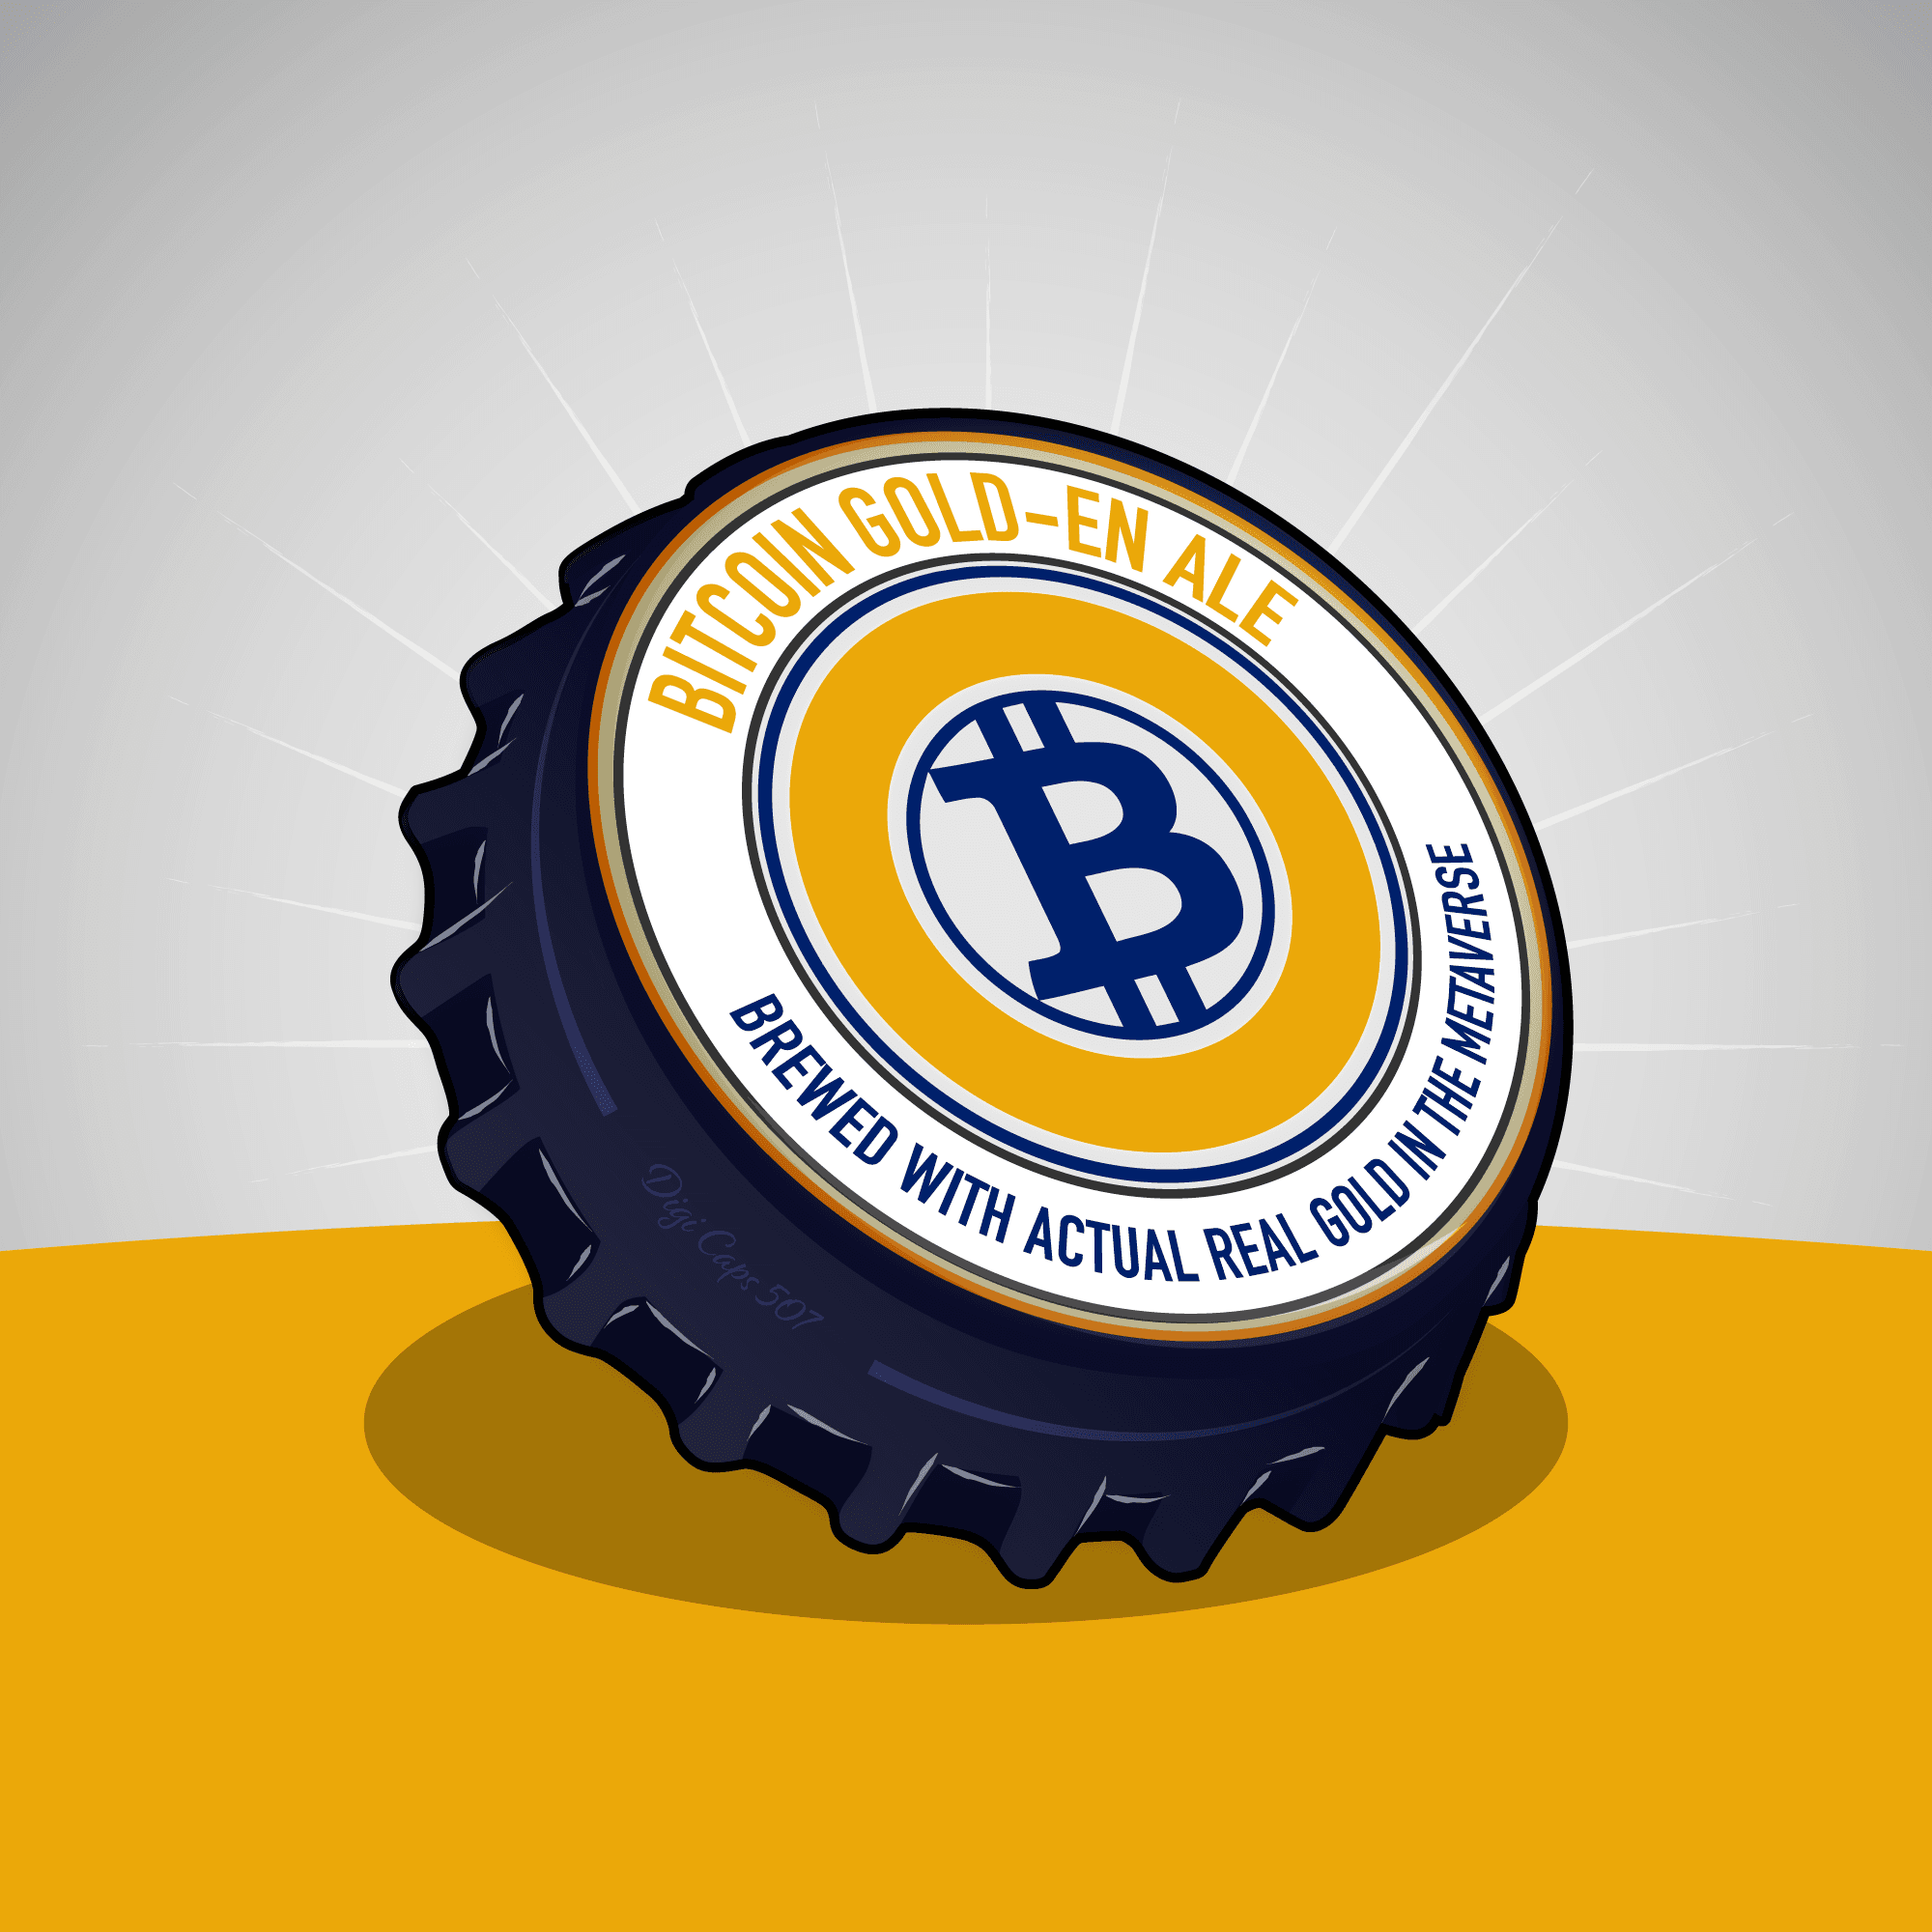 Bitcoin Gold-en Ale Bottle Cap